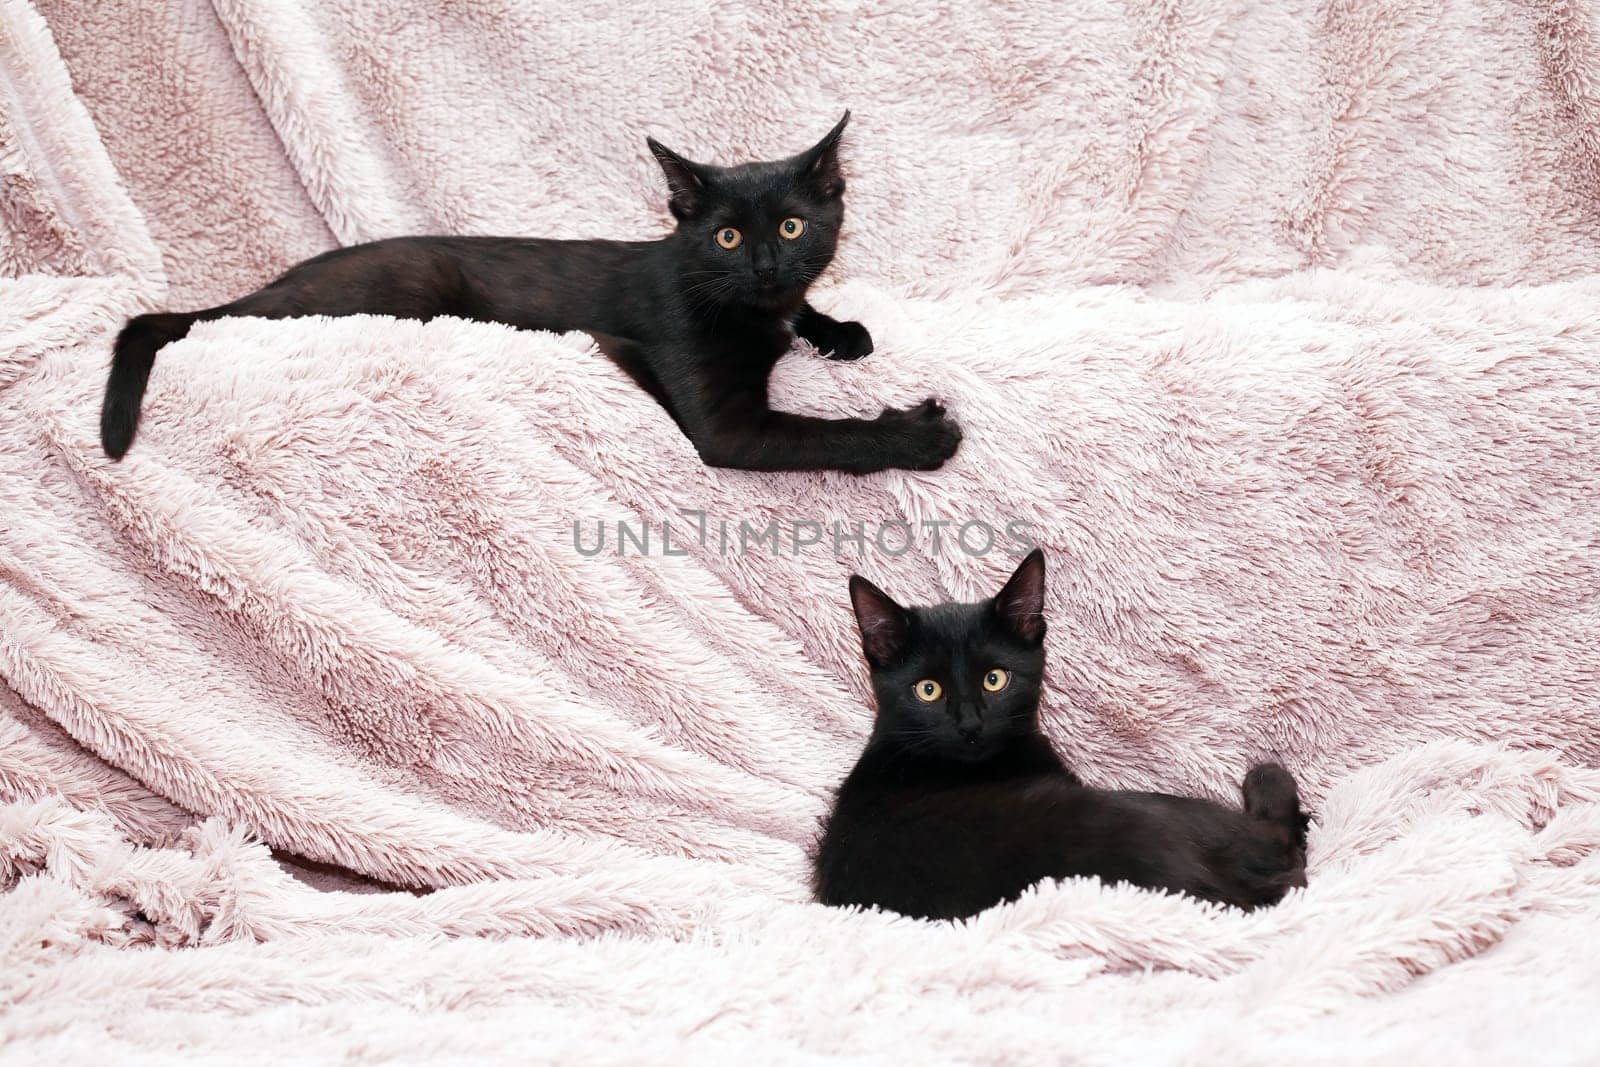 Small Black Kittens by kvkirillov